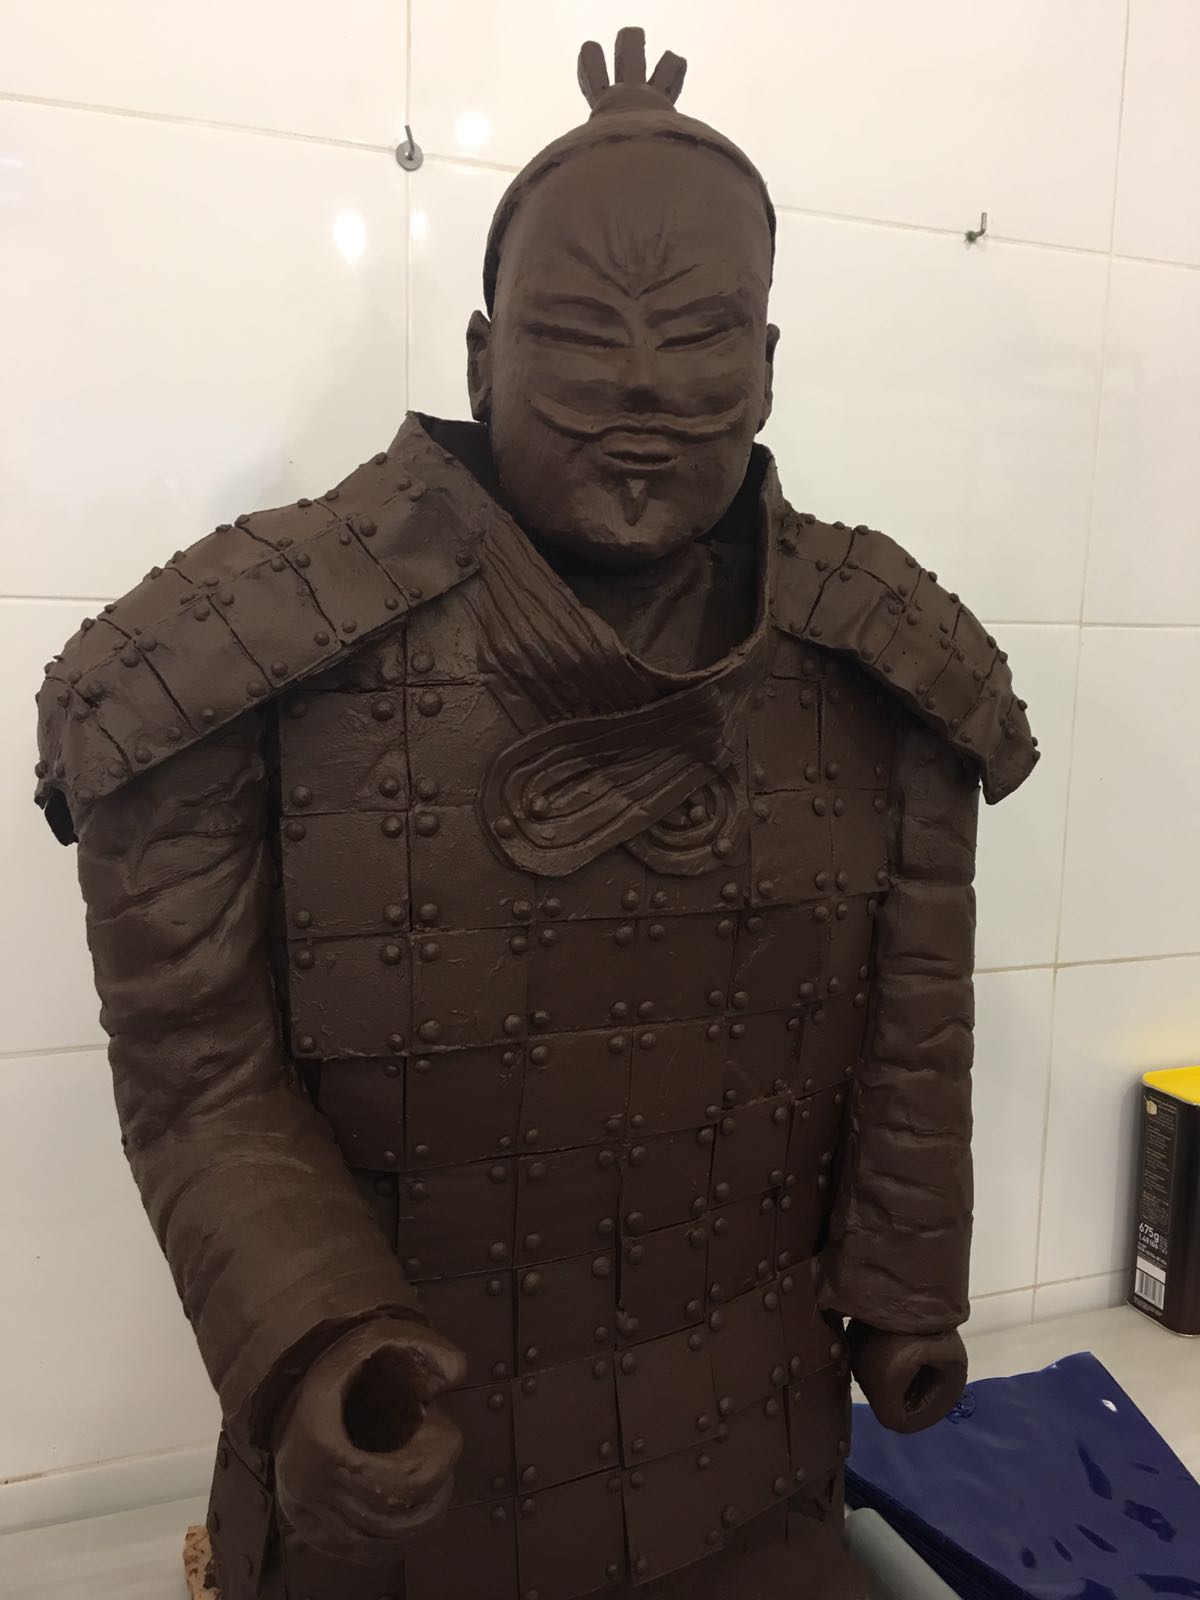 Imatge parcial del guerrer, que té exposat a l'aparador de la nova botiga